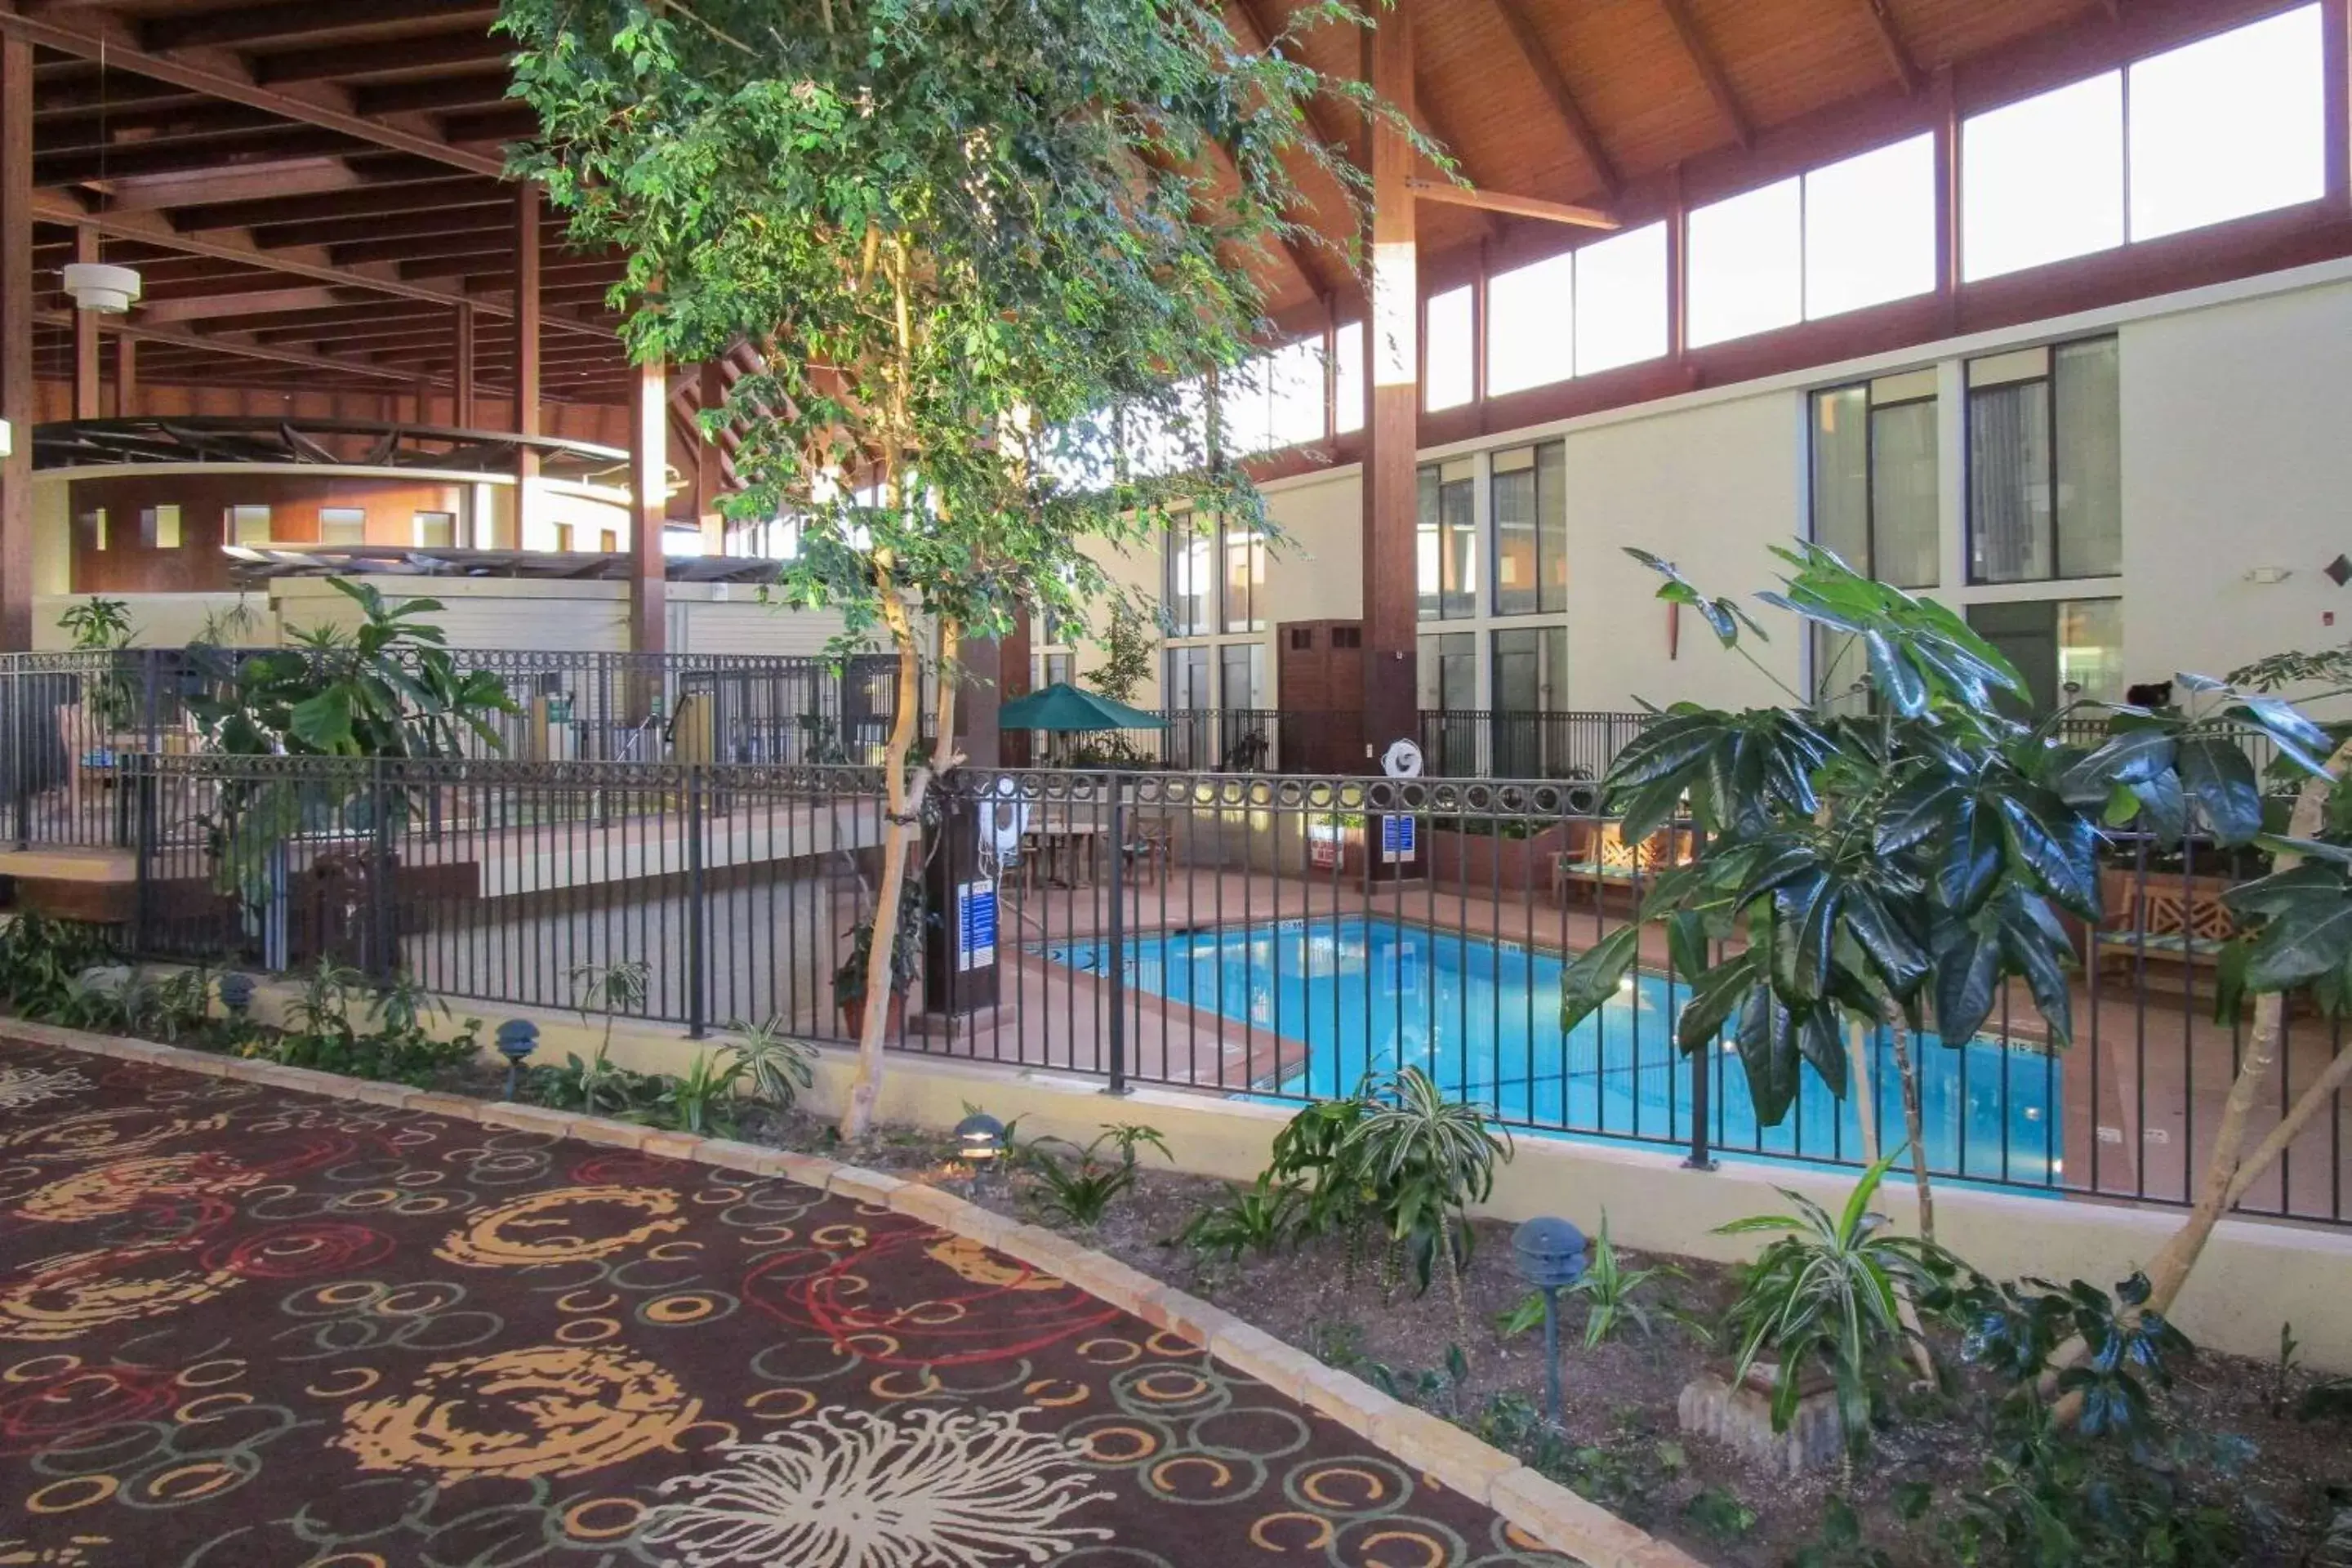 Swimming Pool in Radisson Hotel Lenexa Overland Park